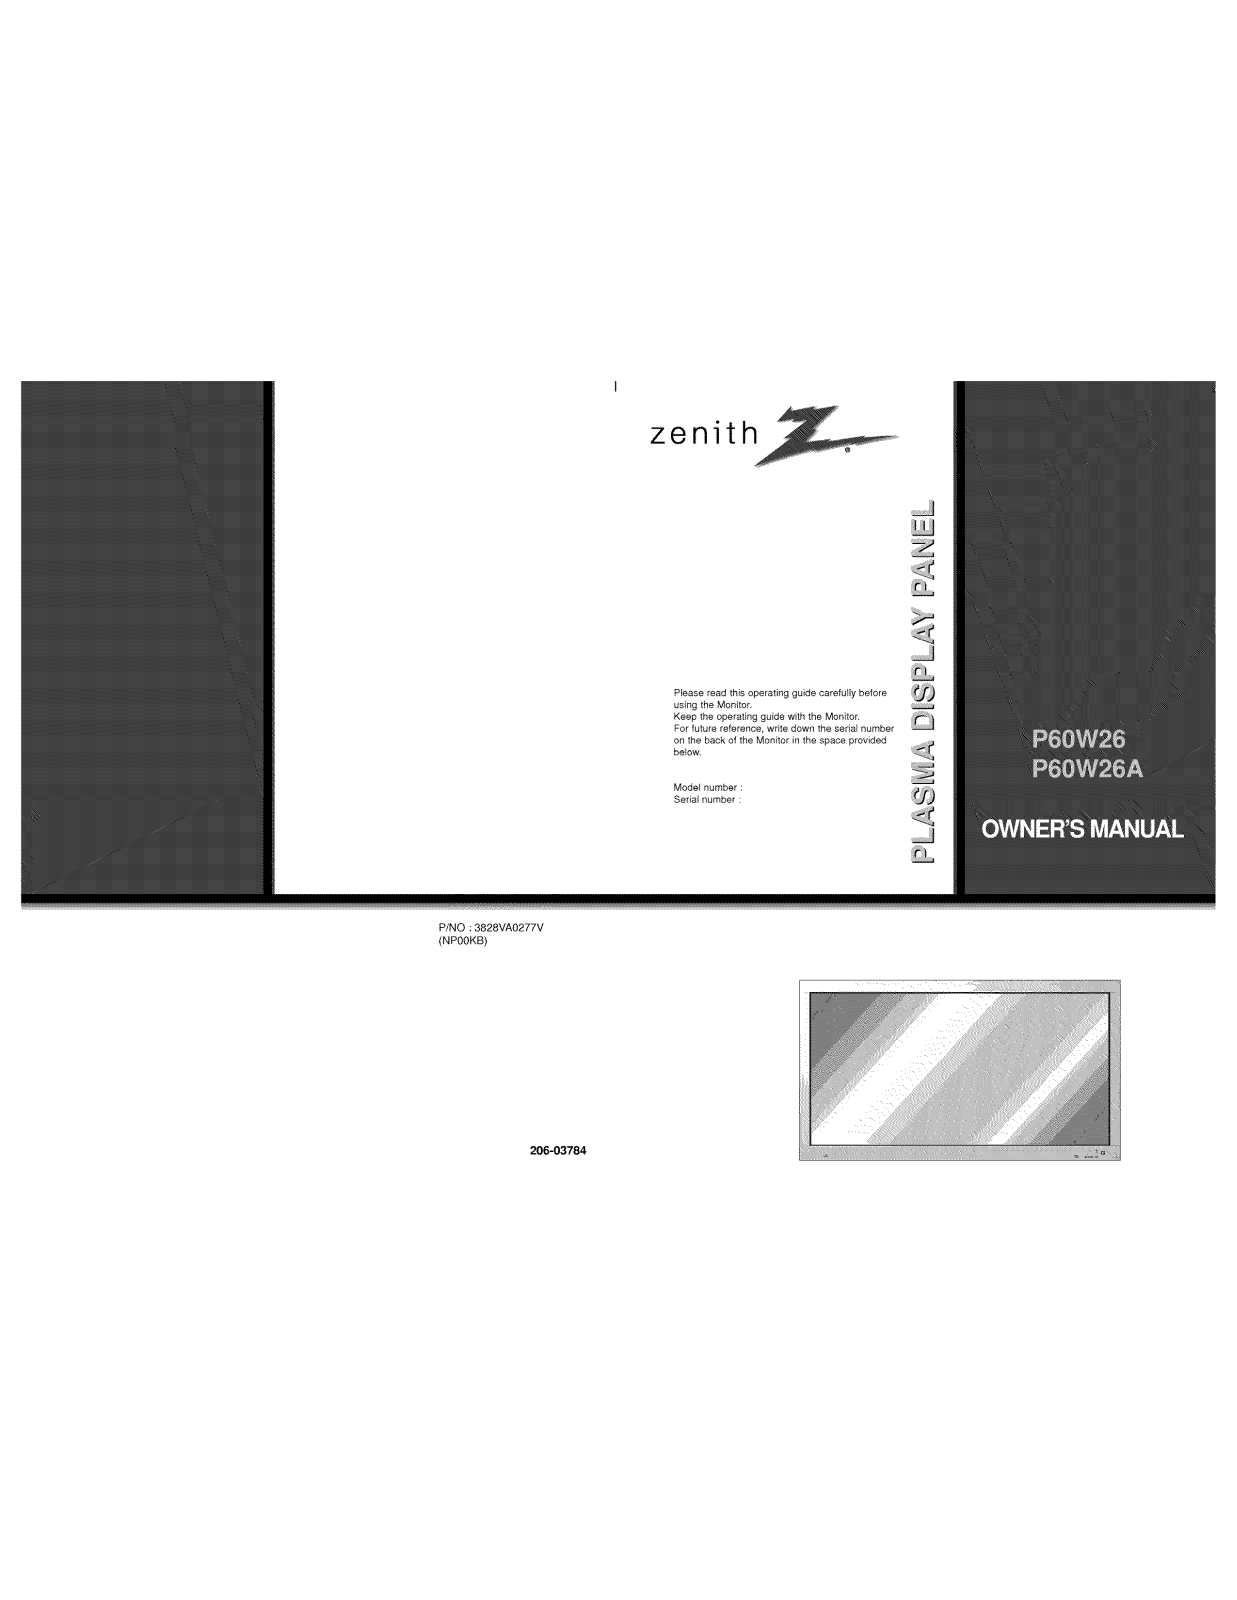 LG P60W26A, MU-60PZ11A-AALZKZ Owner’s Manual